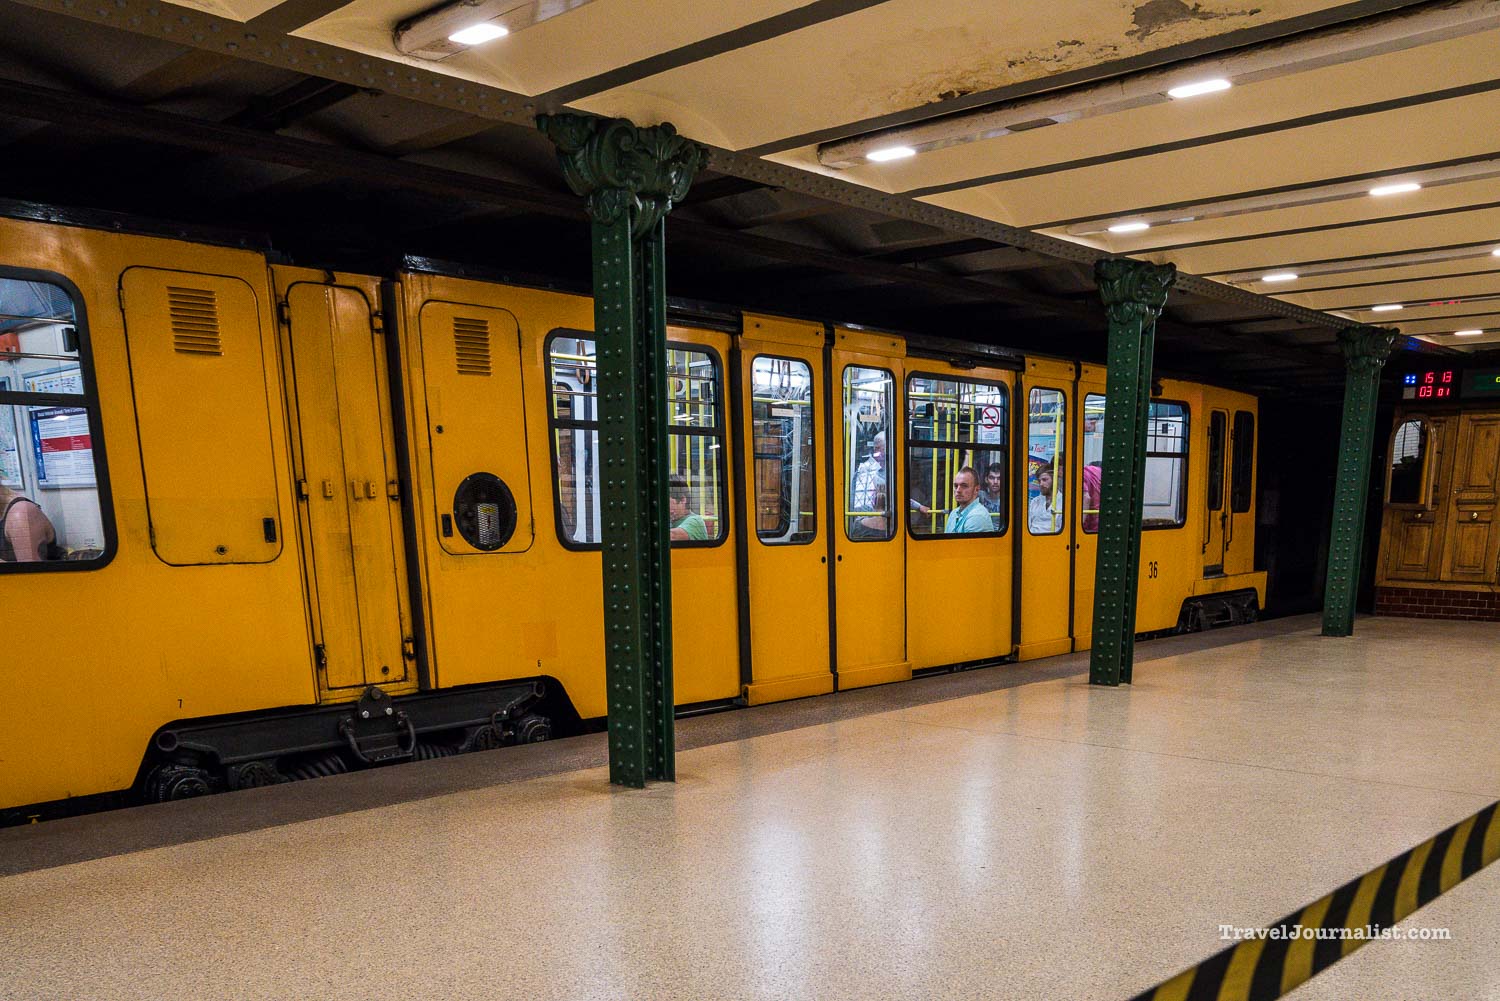 budapest-hungary-landamark-metro-subway-tubes-5